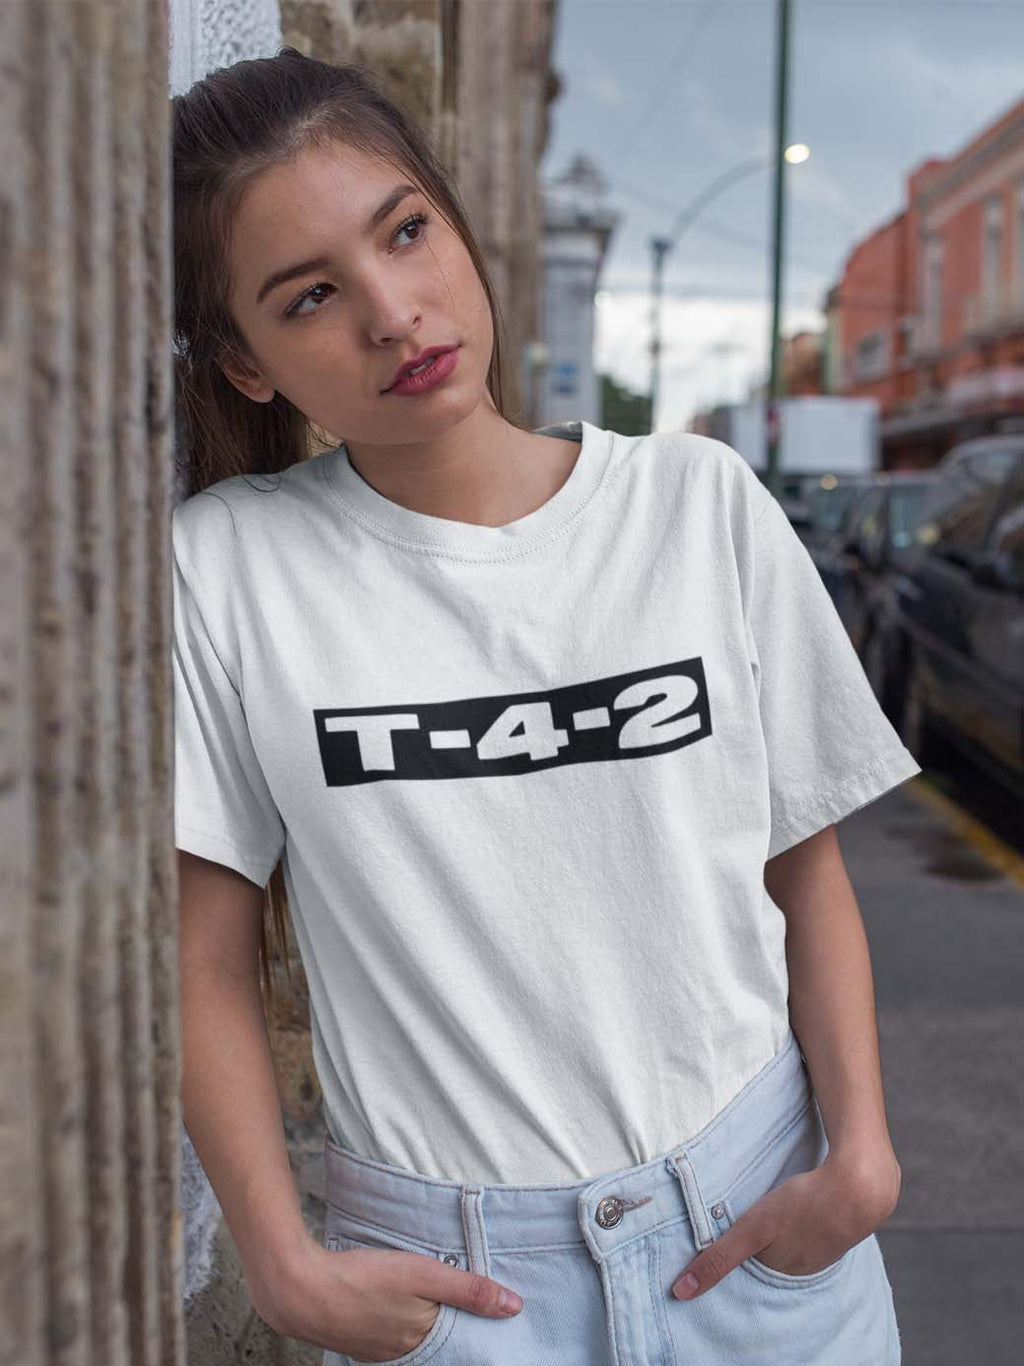 T-4-2 Logo White Tee